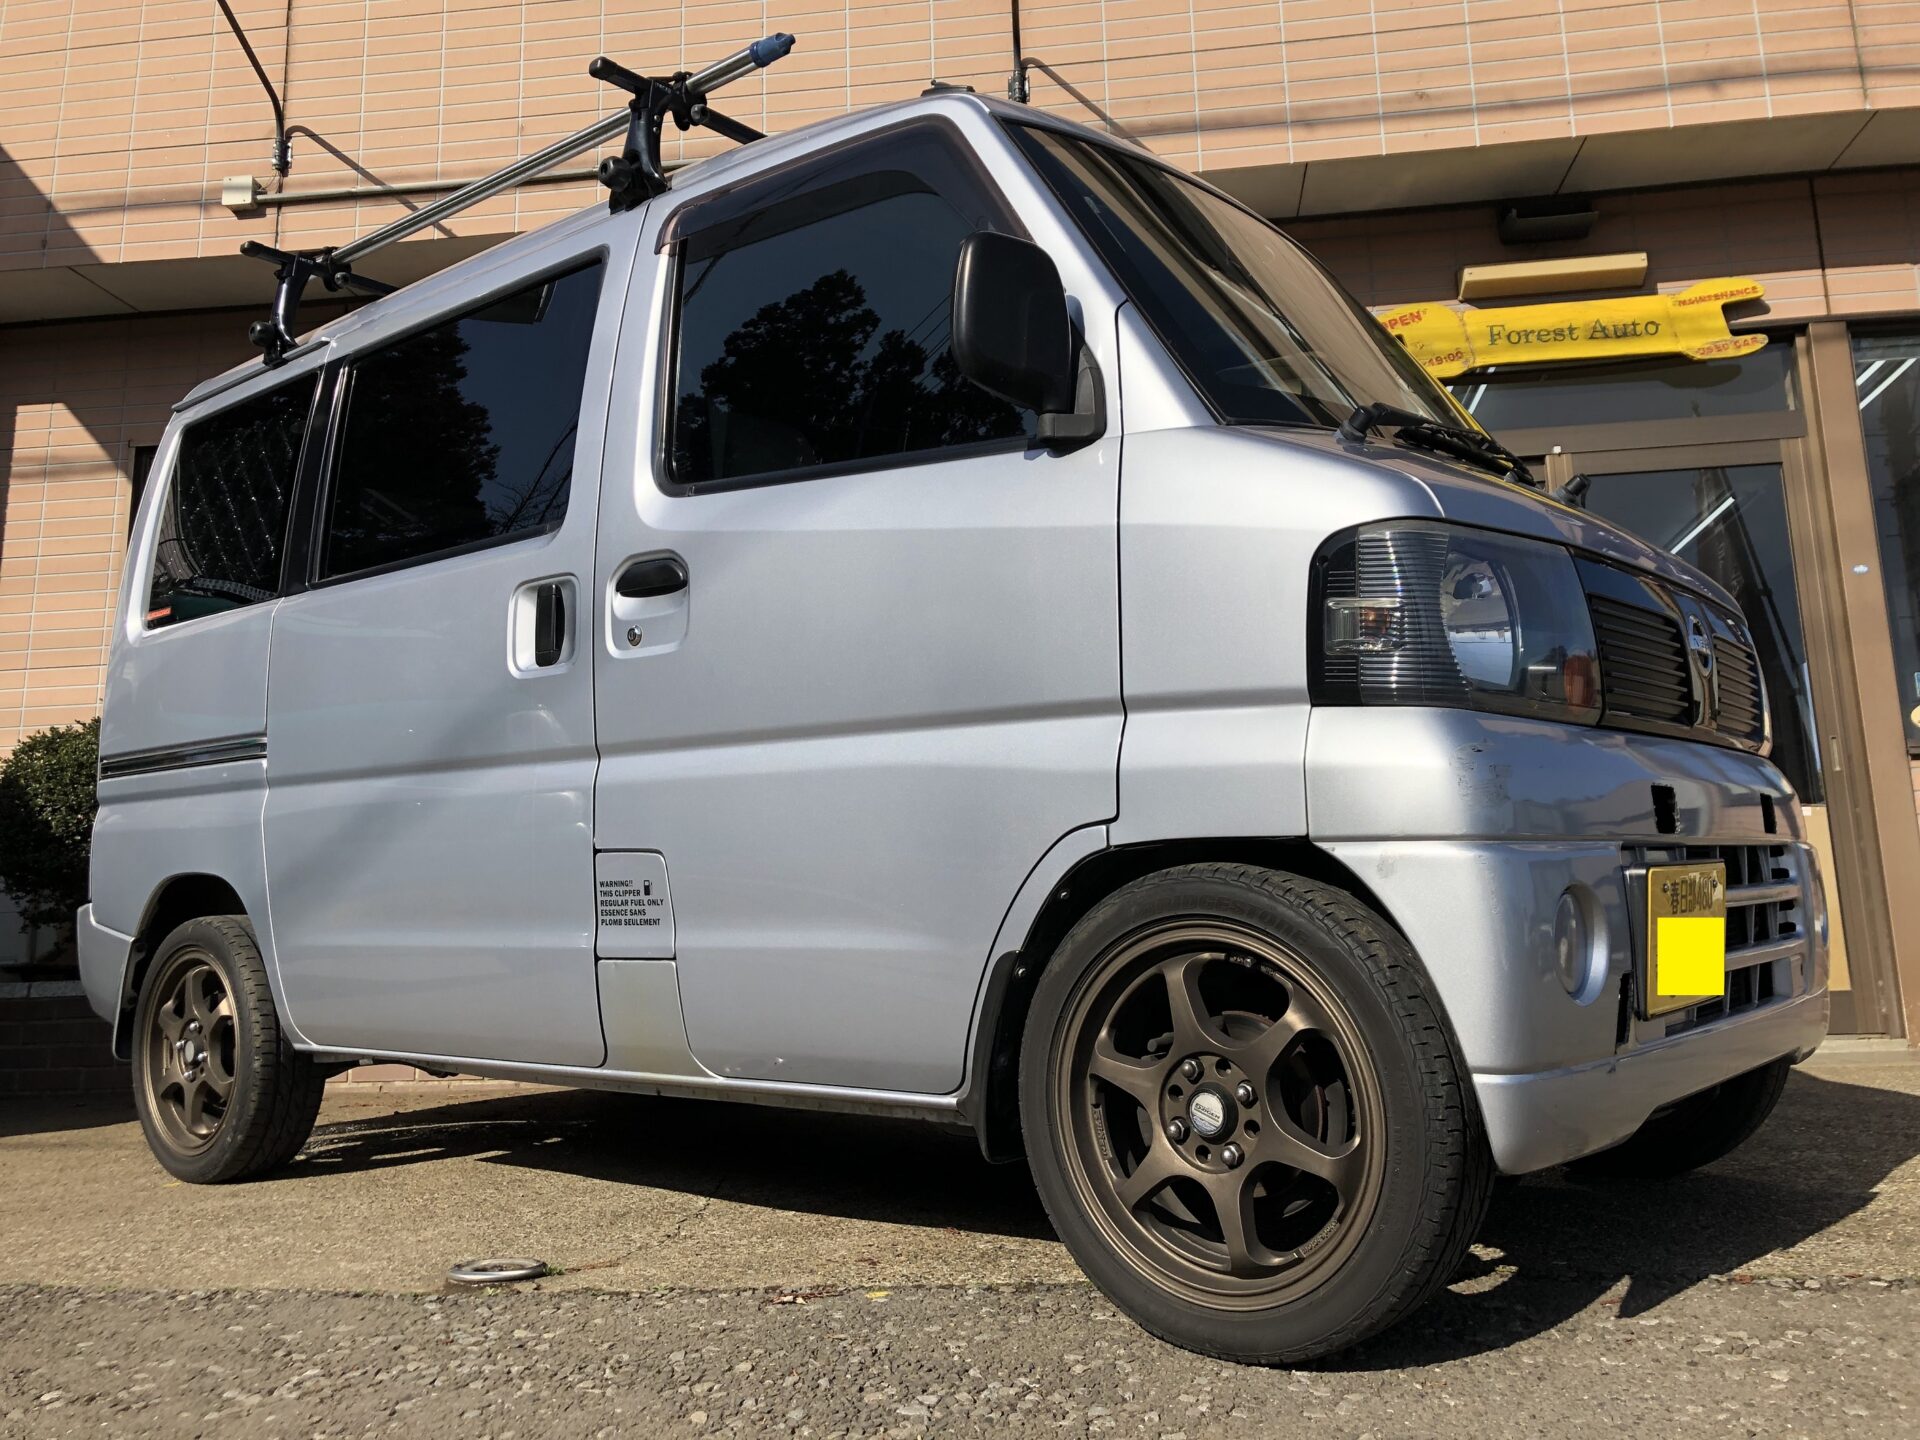 ｸﾘｯﾊﾟｰﾘﾌﾄｱｯﾌﾟ FAFﾘﾌﾄｱｯﾌﾟｽﾌﾟﾘﾝｸﾞ取り付 日産ｸﾘｯﾊﾟｰ 2WD（型式U71V）埼玉県 越谷市 クロ・ワークス様 -  Home